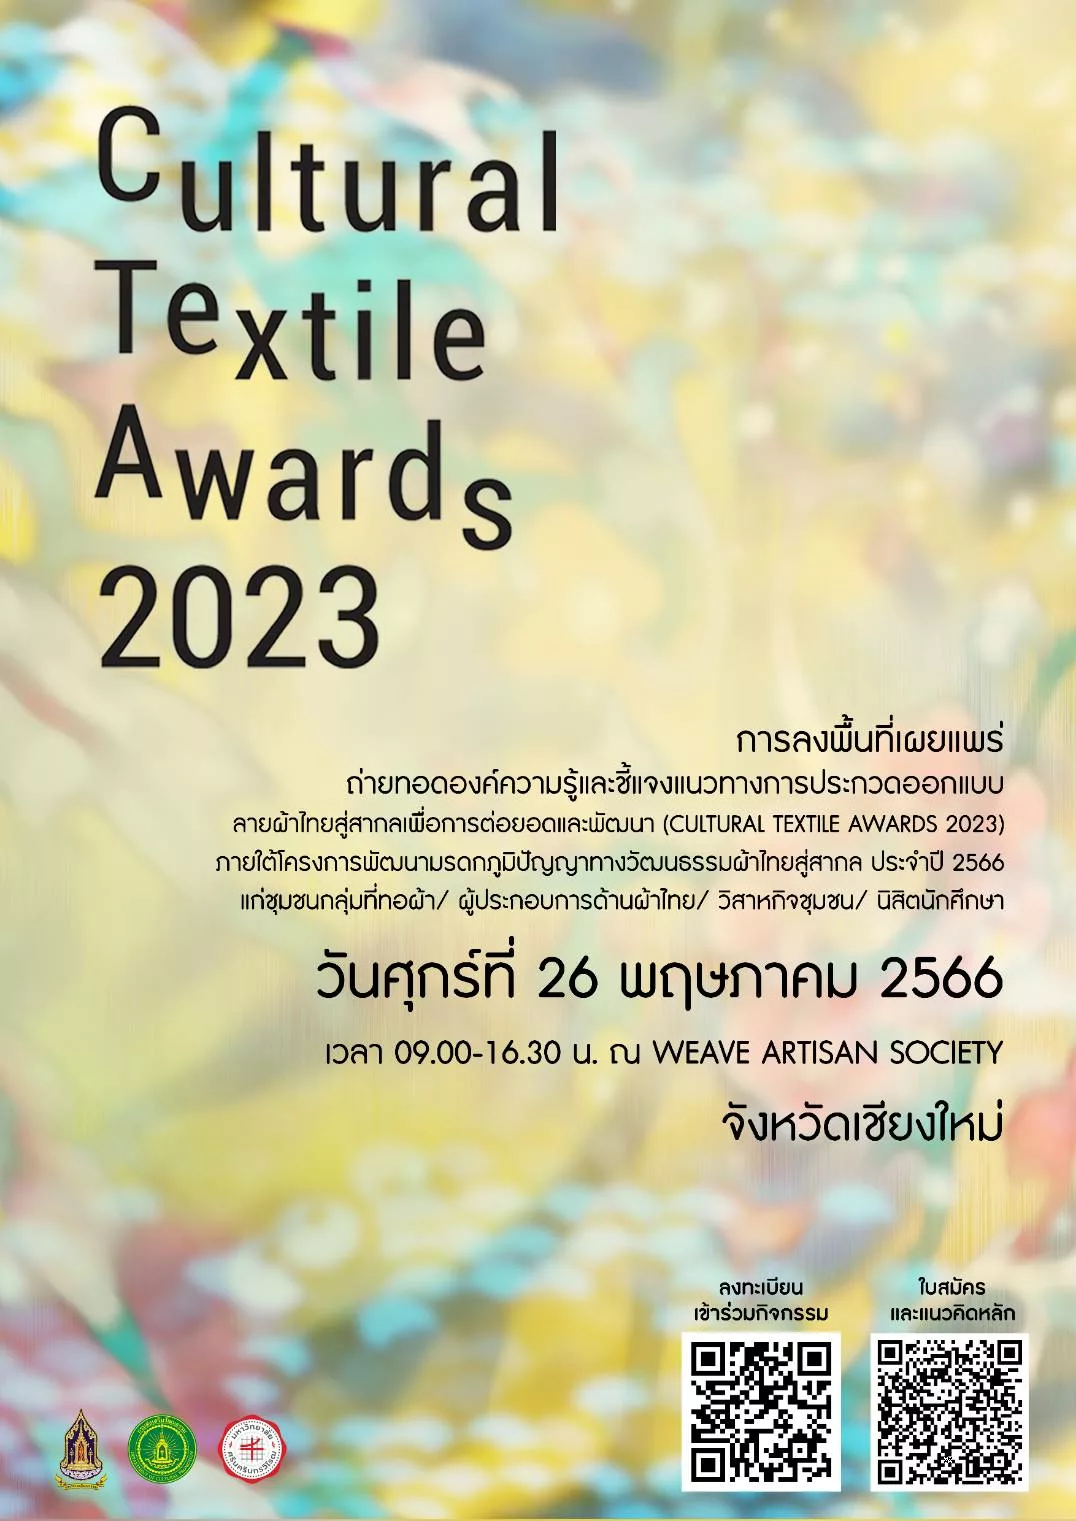 งานประกวดแบบลายผ้า (𝘊𝘶𝘭𝘵𝘶𝘳𝘢𝘭 𝘵𝘦𝘹𝘵𝘪𝘭𝘦 𝘢𝘸𝘢𝘳𝘥 2023) สัญจรภาคเหนือ เพื่ออนุรักษ์ภูมิปัญญาการทอผ้า ต่อยอด และพัฒนา ภายใต้โครงการพัฒนามรดกภูมิปัญญาทางวัฒนธรรมผ้าไทยสู่สากล ร่วมพูดคุยกับดีไซน์เนอร์ชื่อดัง ในวันศุกร์ที่ 26 พฤษภาคม 2566 ตั้งแต่เวลา 09:00-16:30 น.